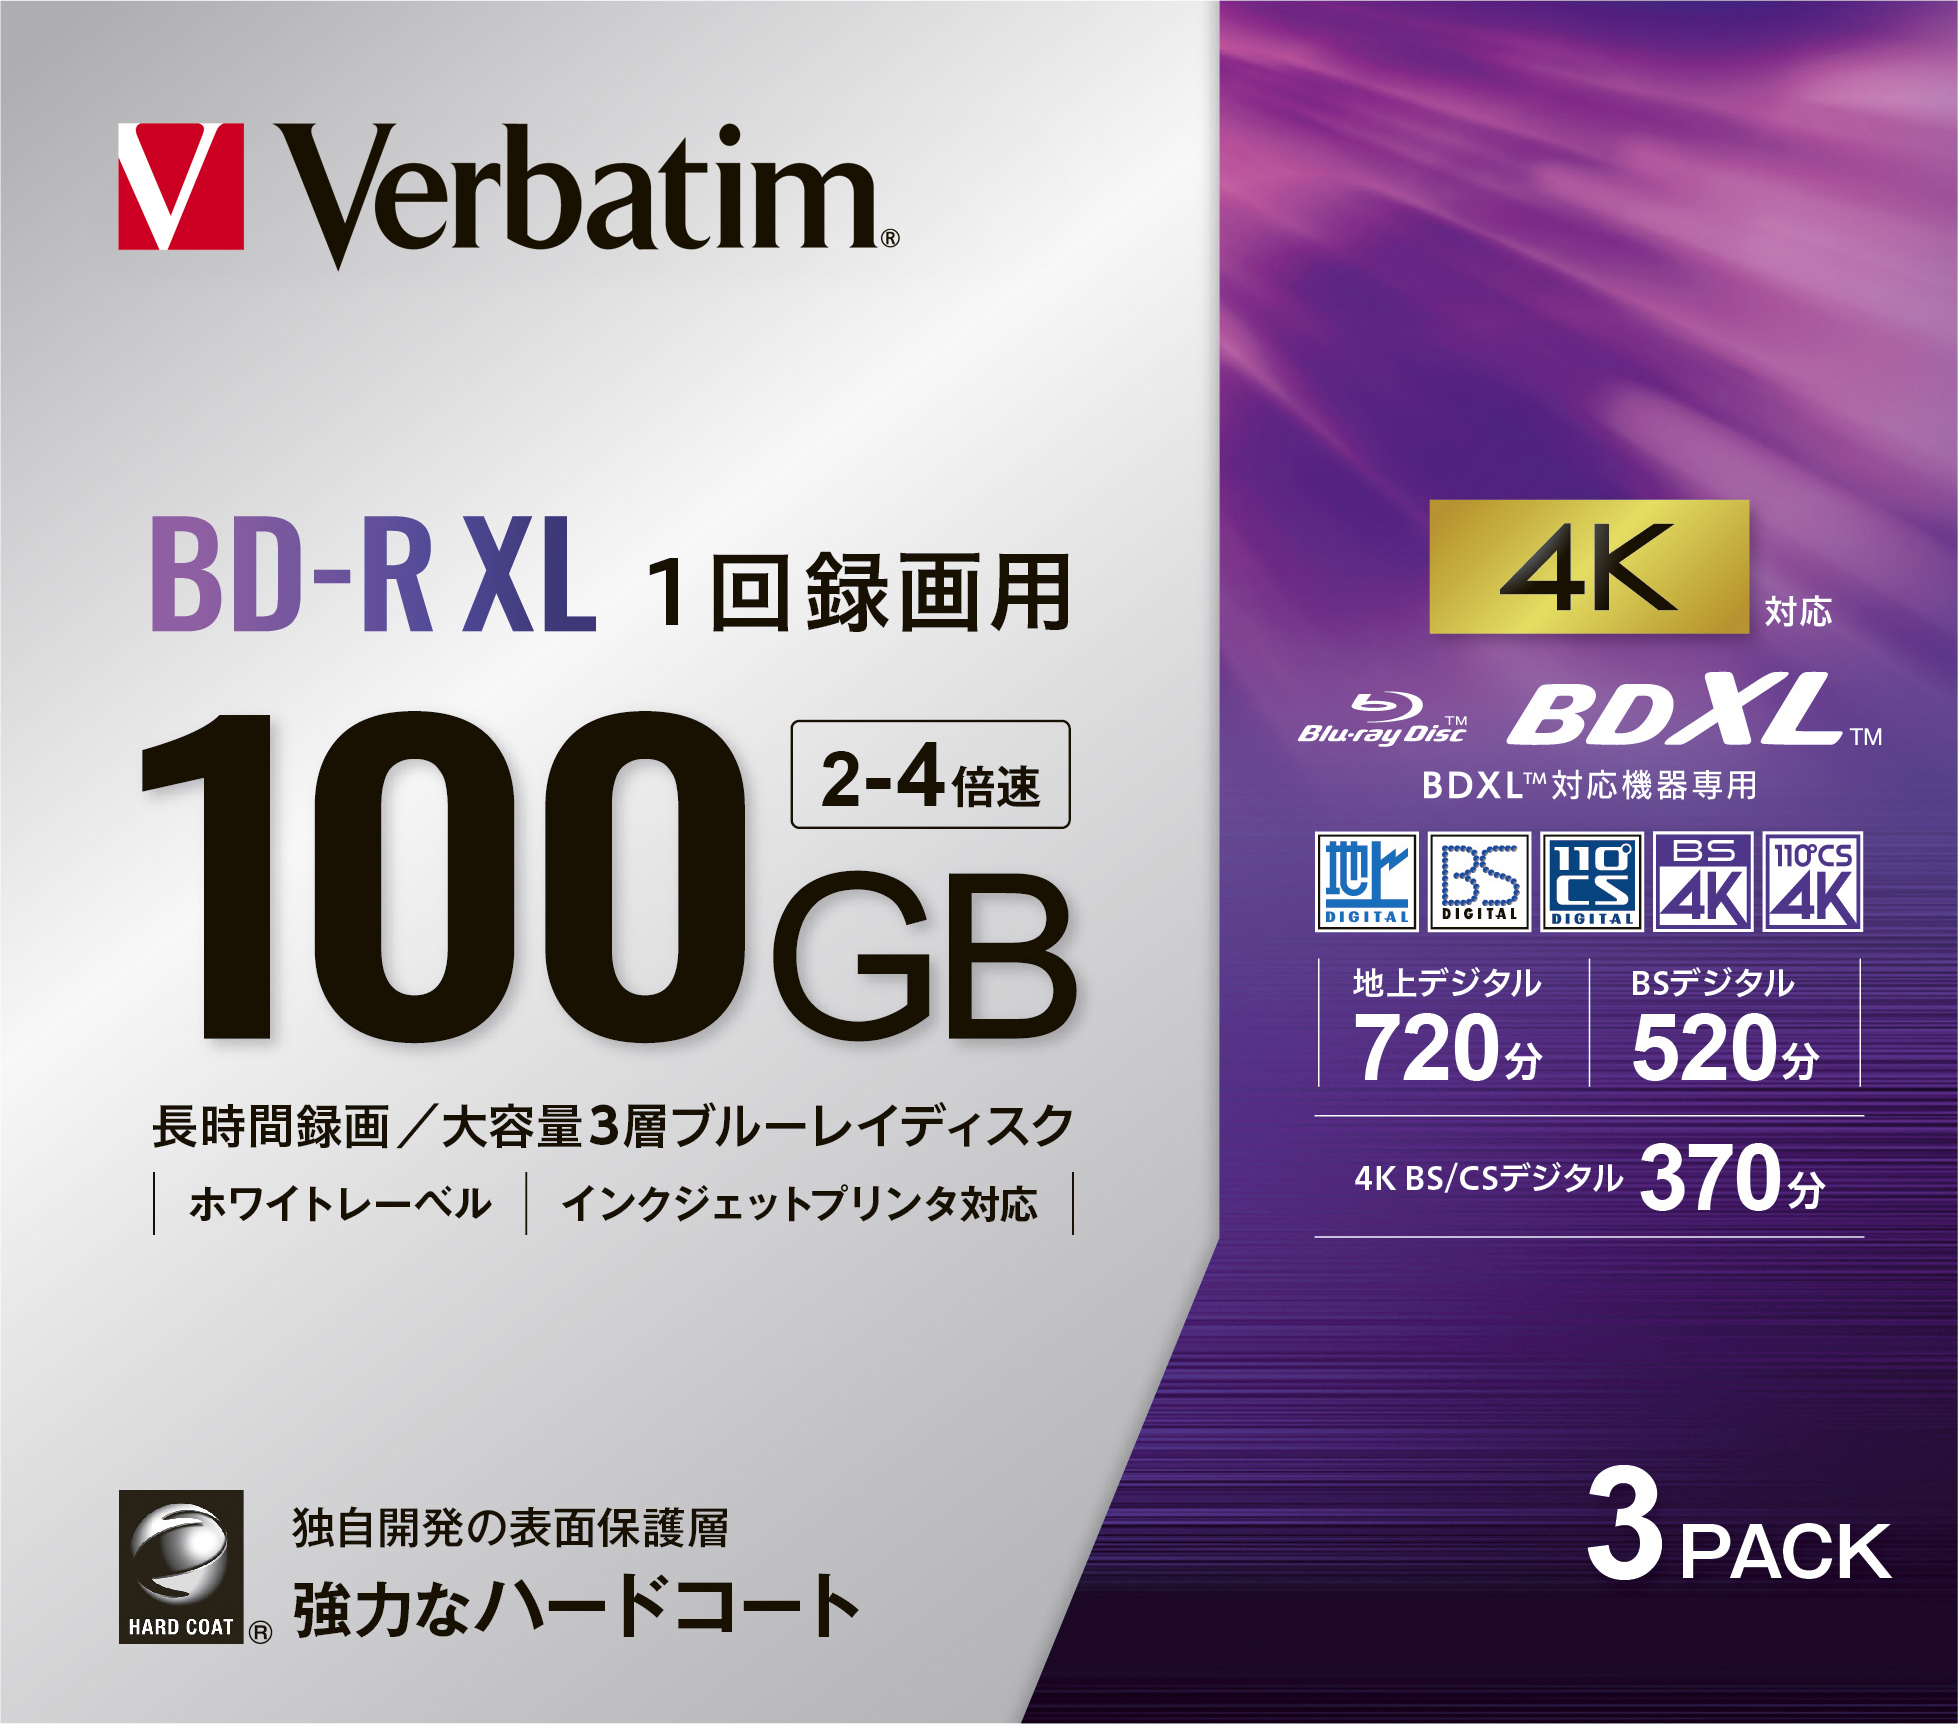 バーベイタム VBR520YP3D4 4倍速対応BD-R XL 3枚パック100GB ホワイトプリンタブル[VBR520YP3D4] 返品種別A